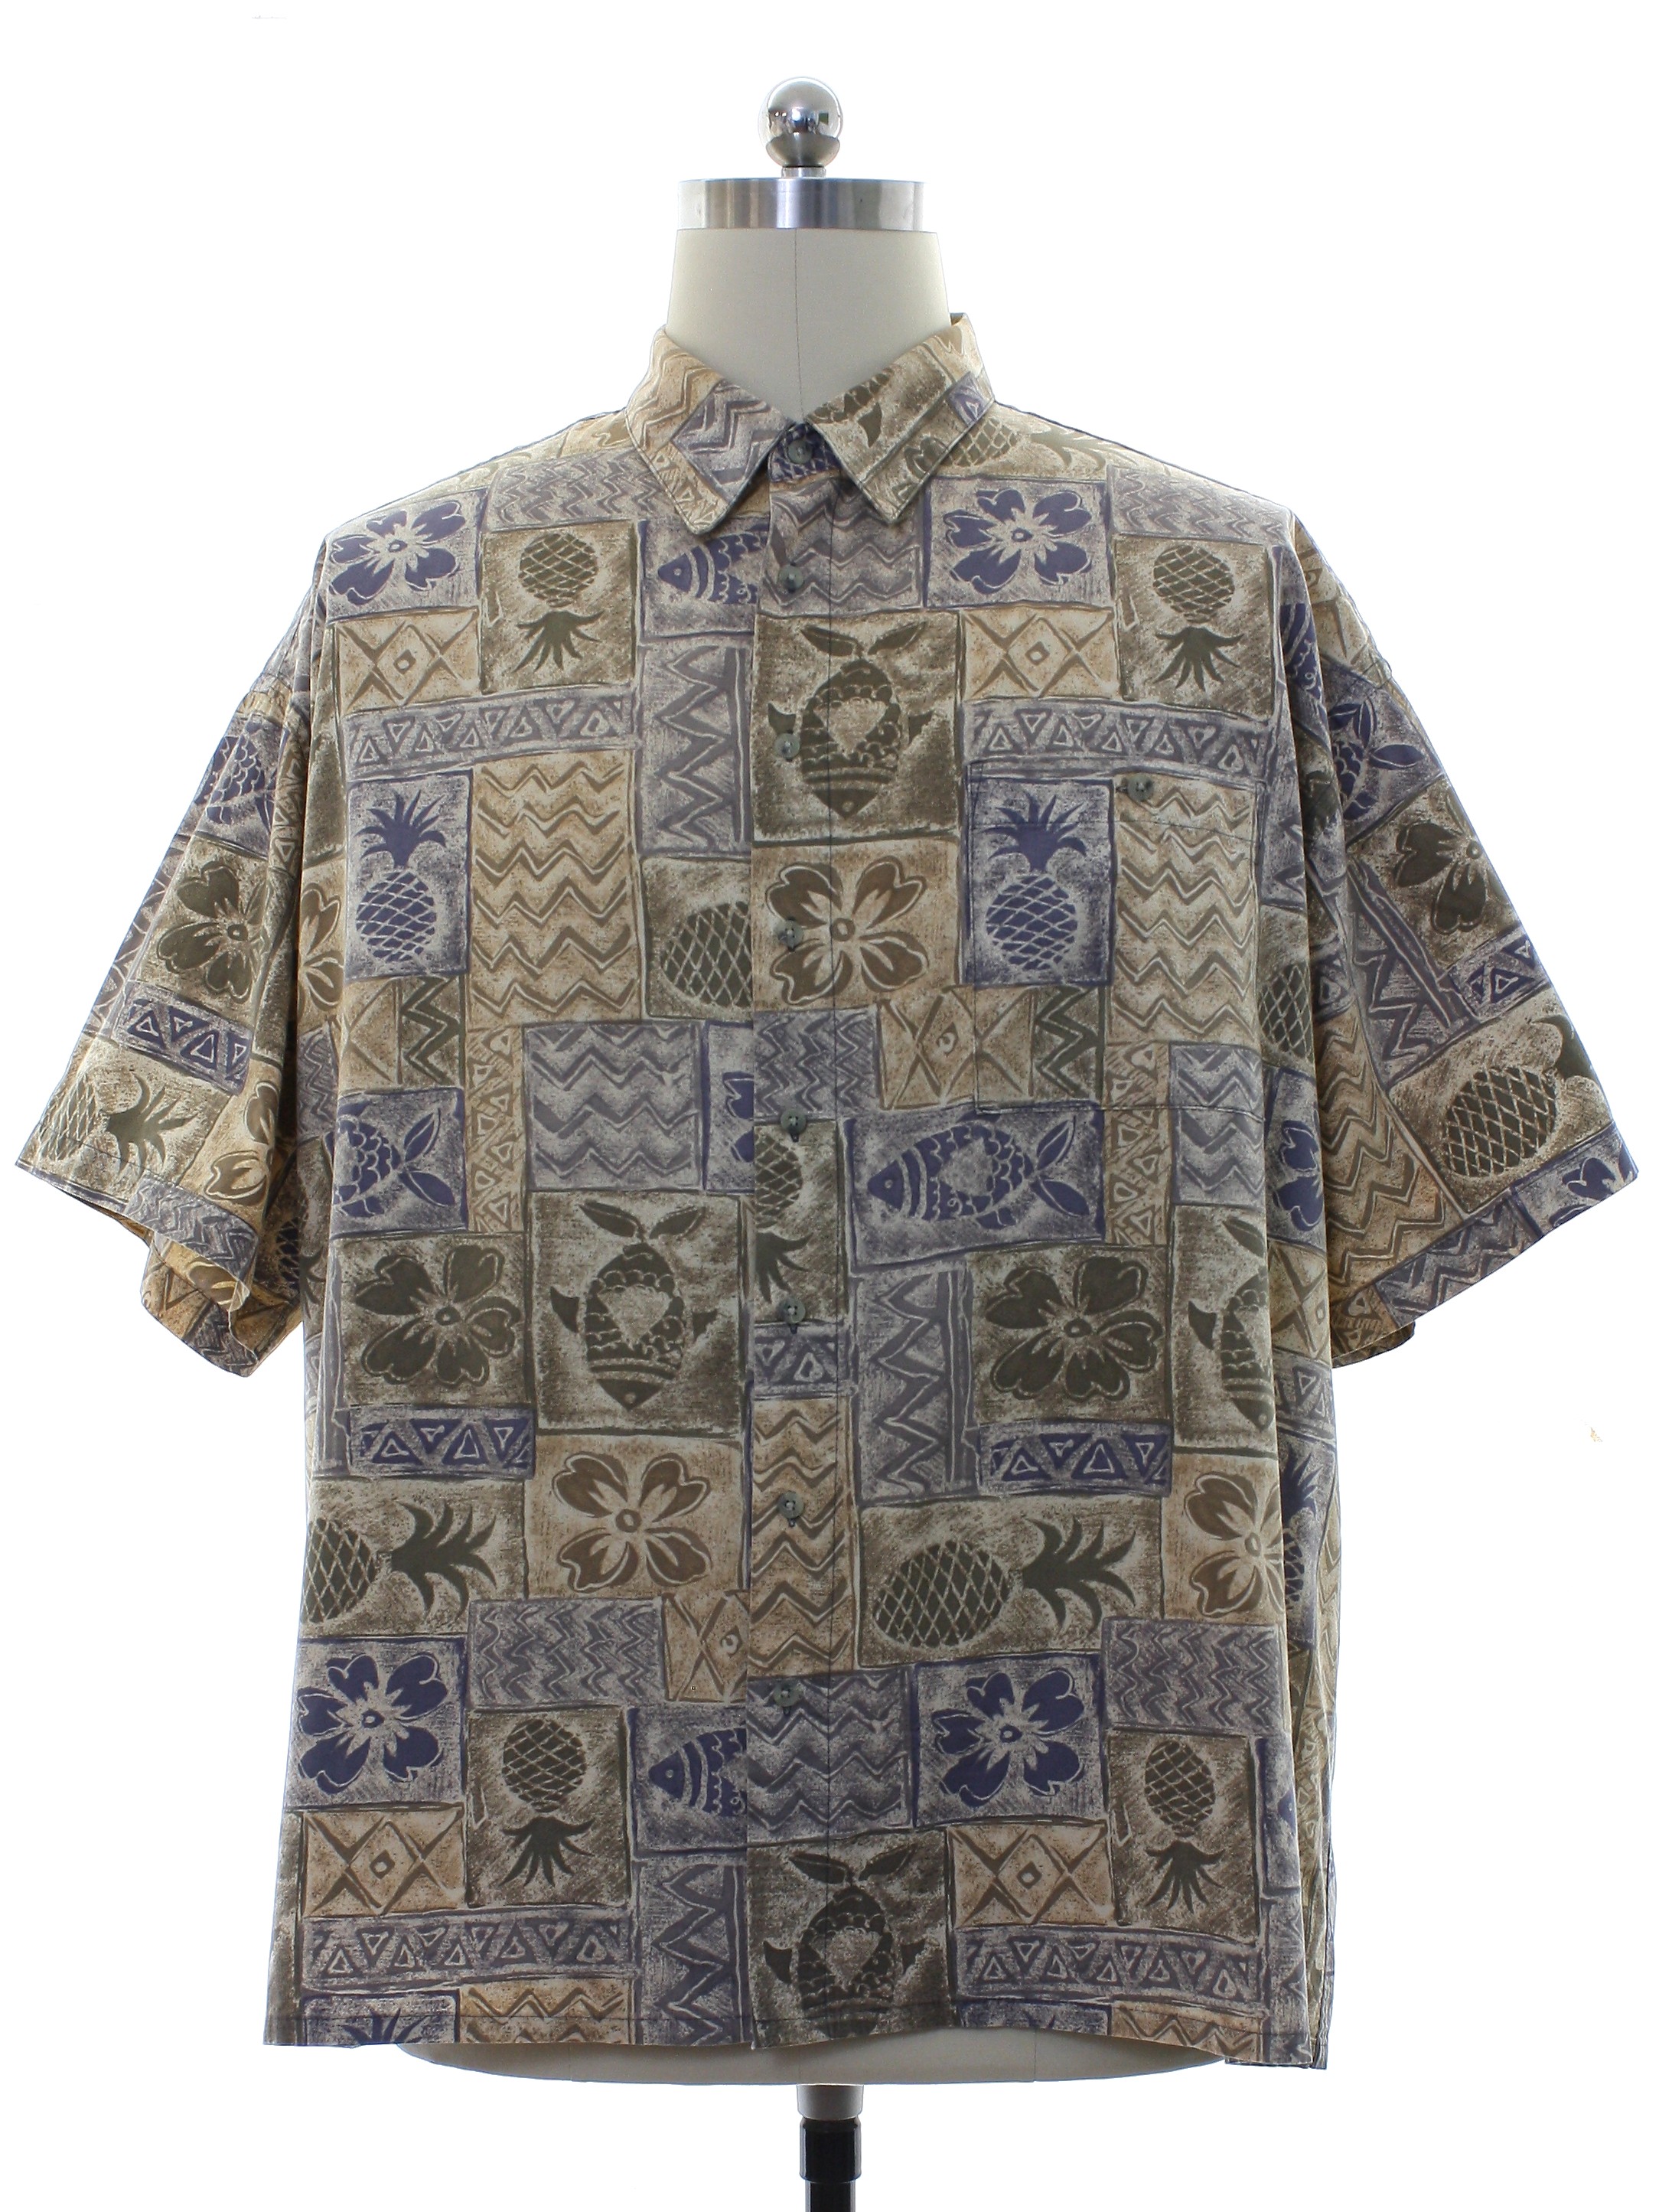 Vintage 90's Hutspah Button Up Shirt - S/M/L